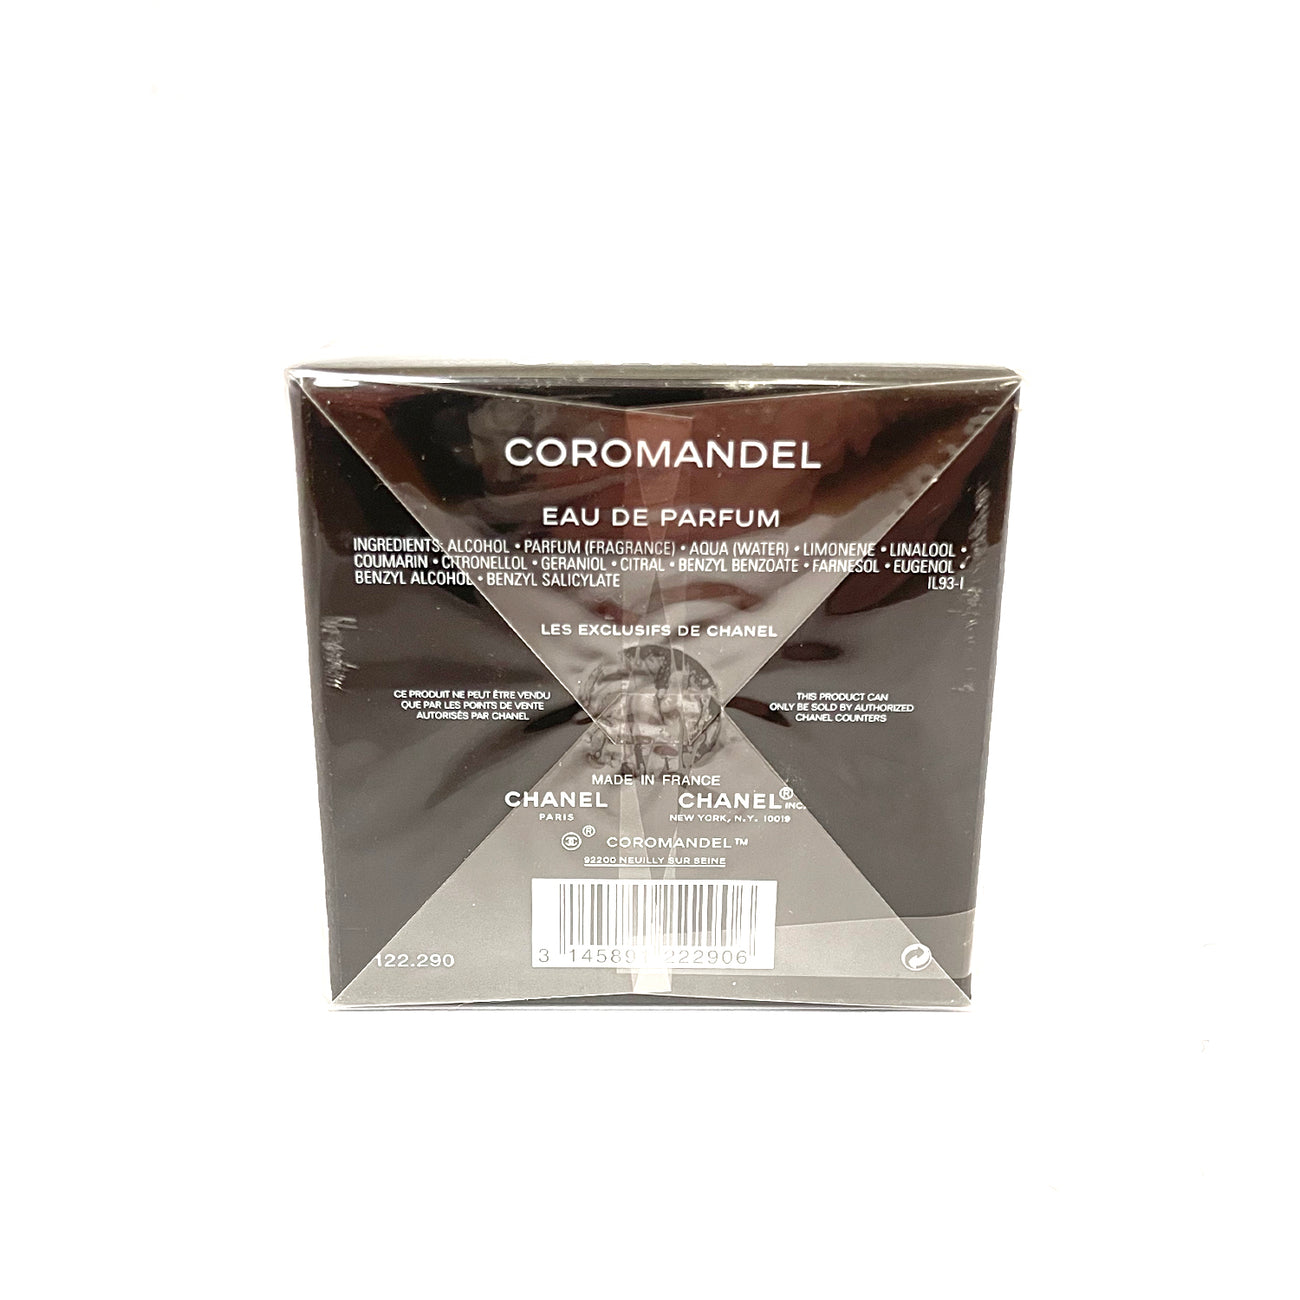 COROMANDEL LES EXCLUSIFS DE CHANEL - PARFUM, Beauty & Personal